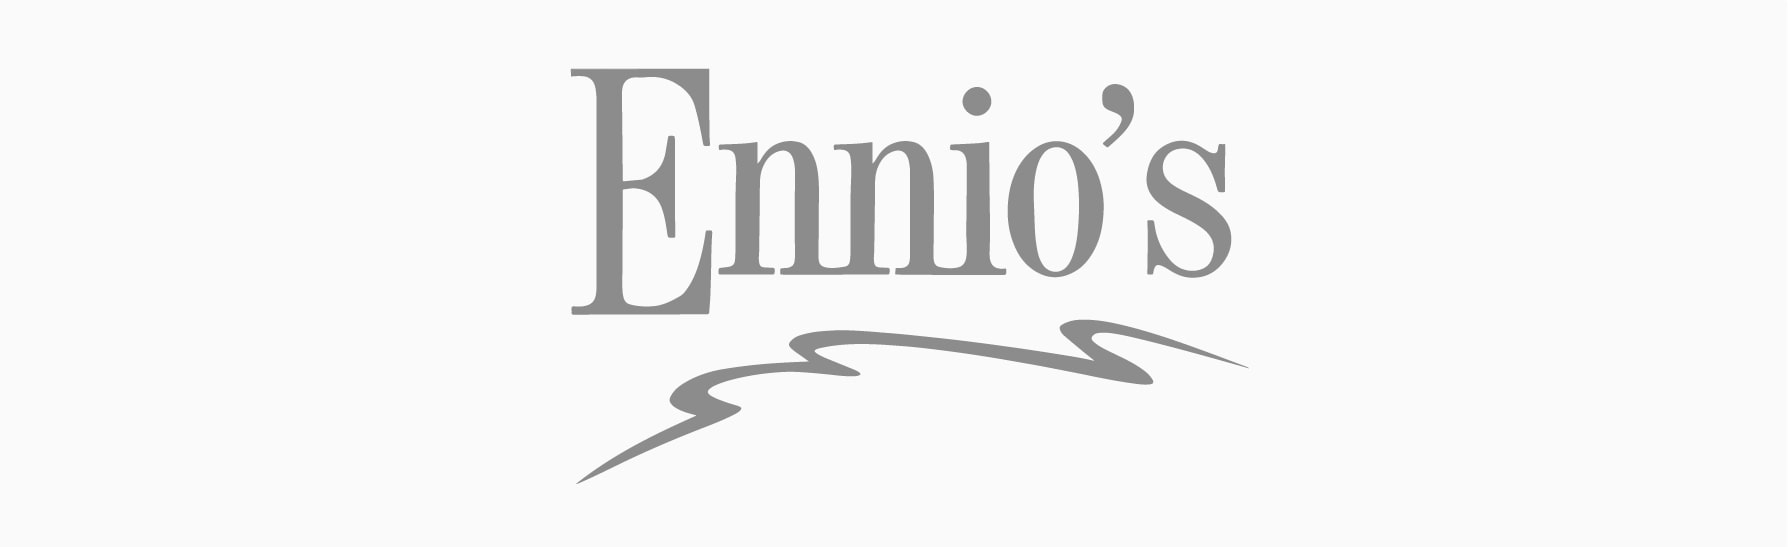 Ennios-01-min